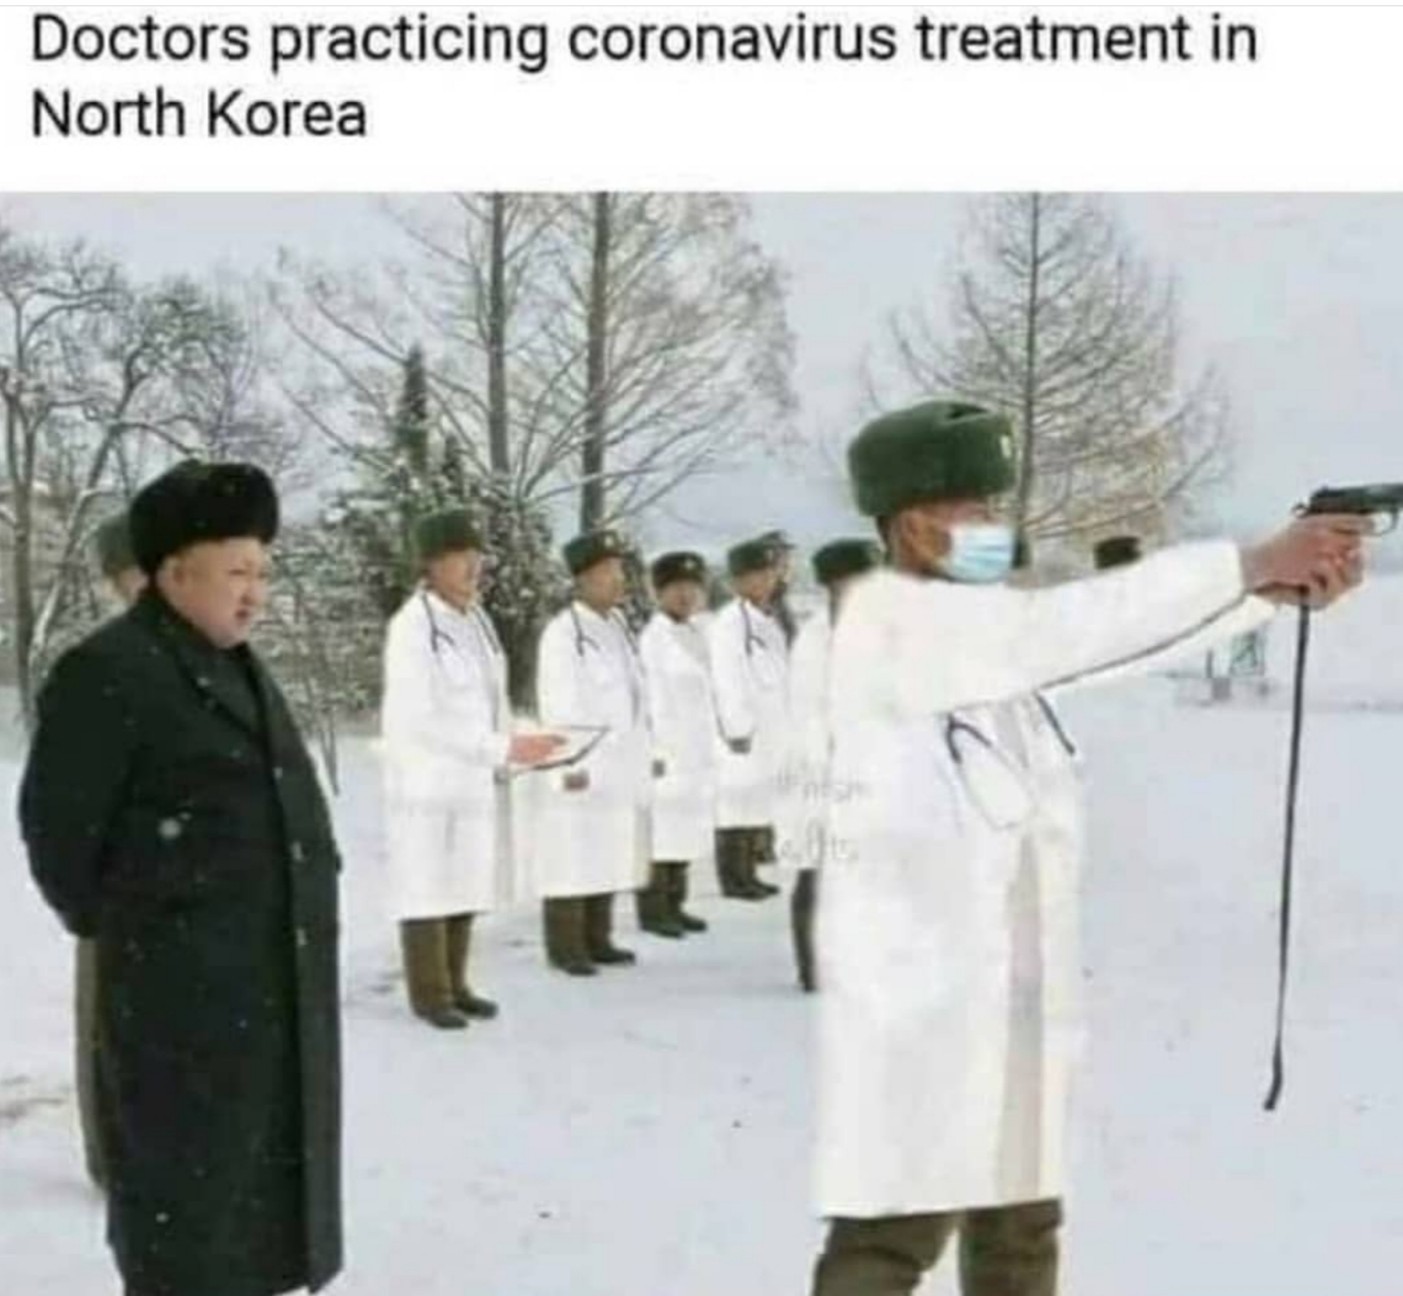 Les médecins détestent cette méthode, et regardez pourquoi - meme